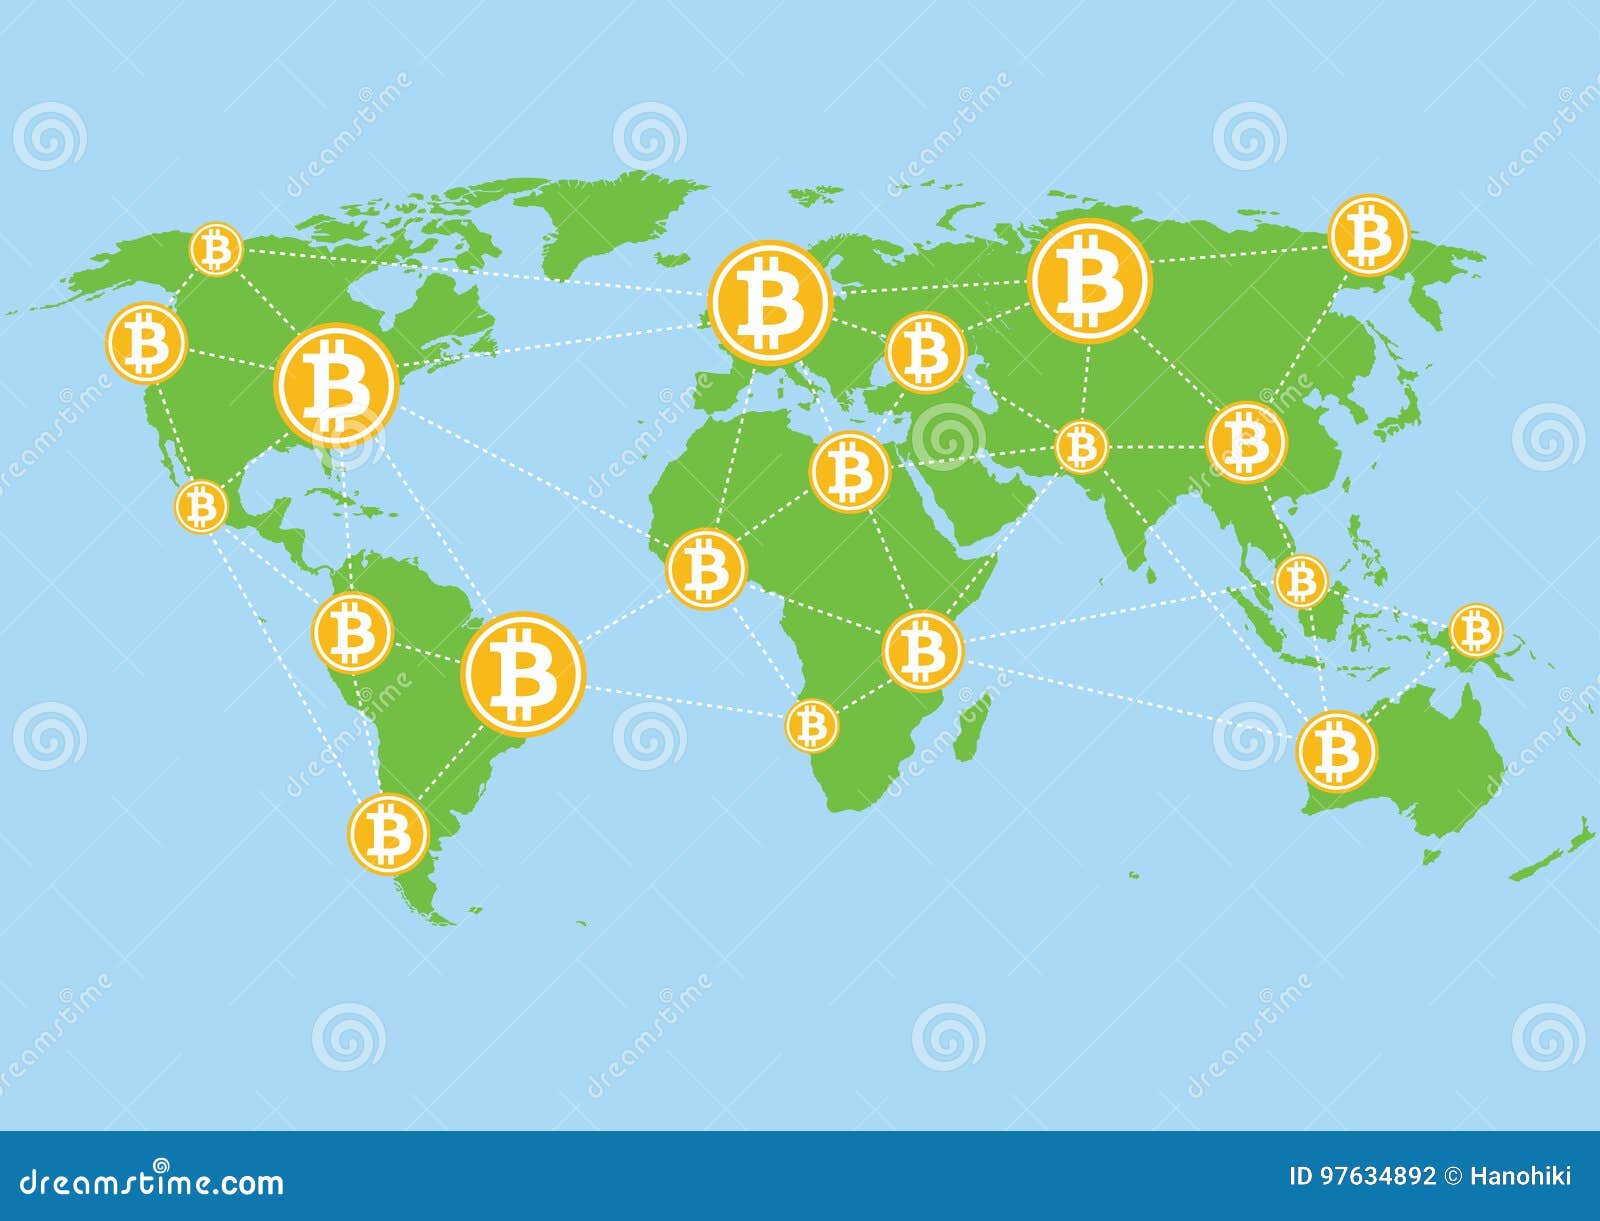 bitcoin map)